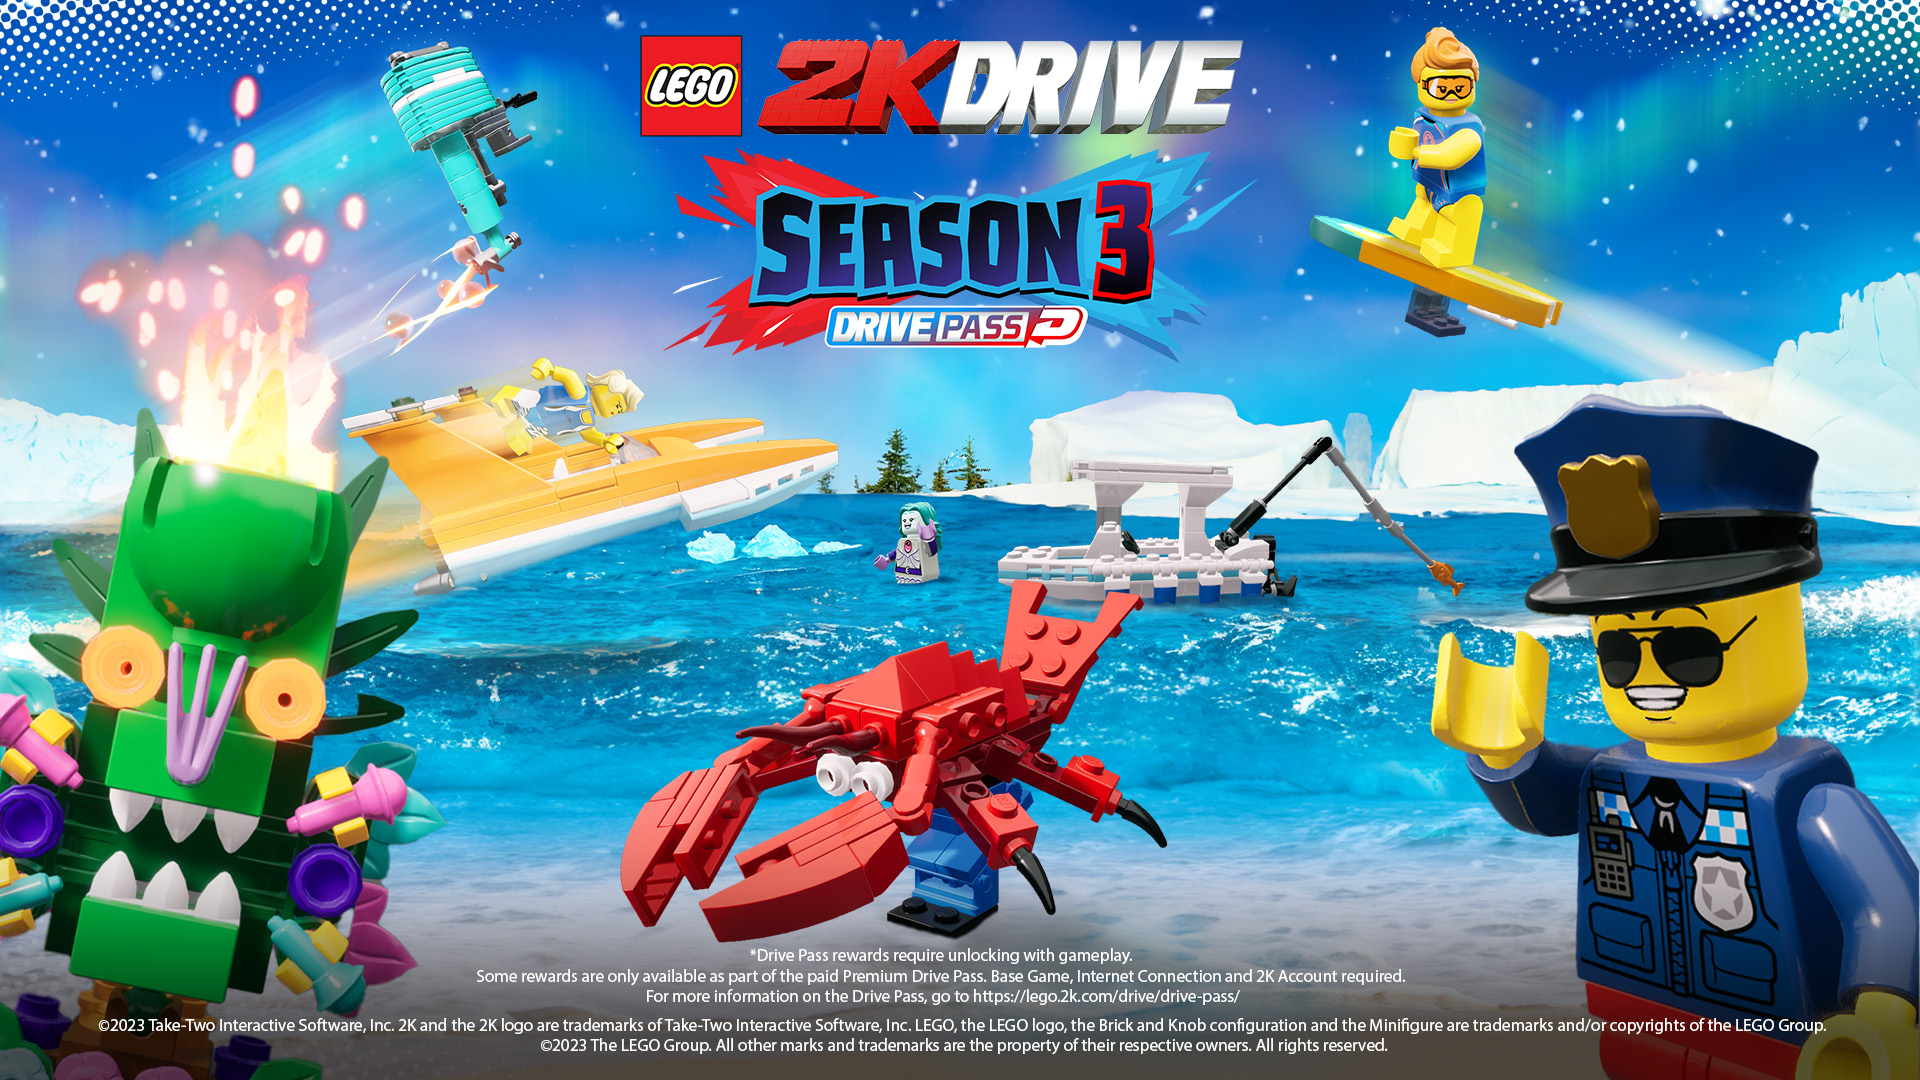 Drive Pass Season 3 Lego 2K Drive